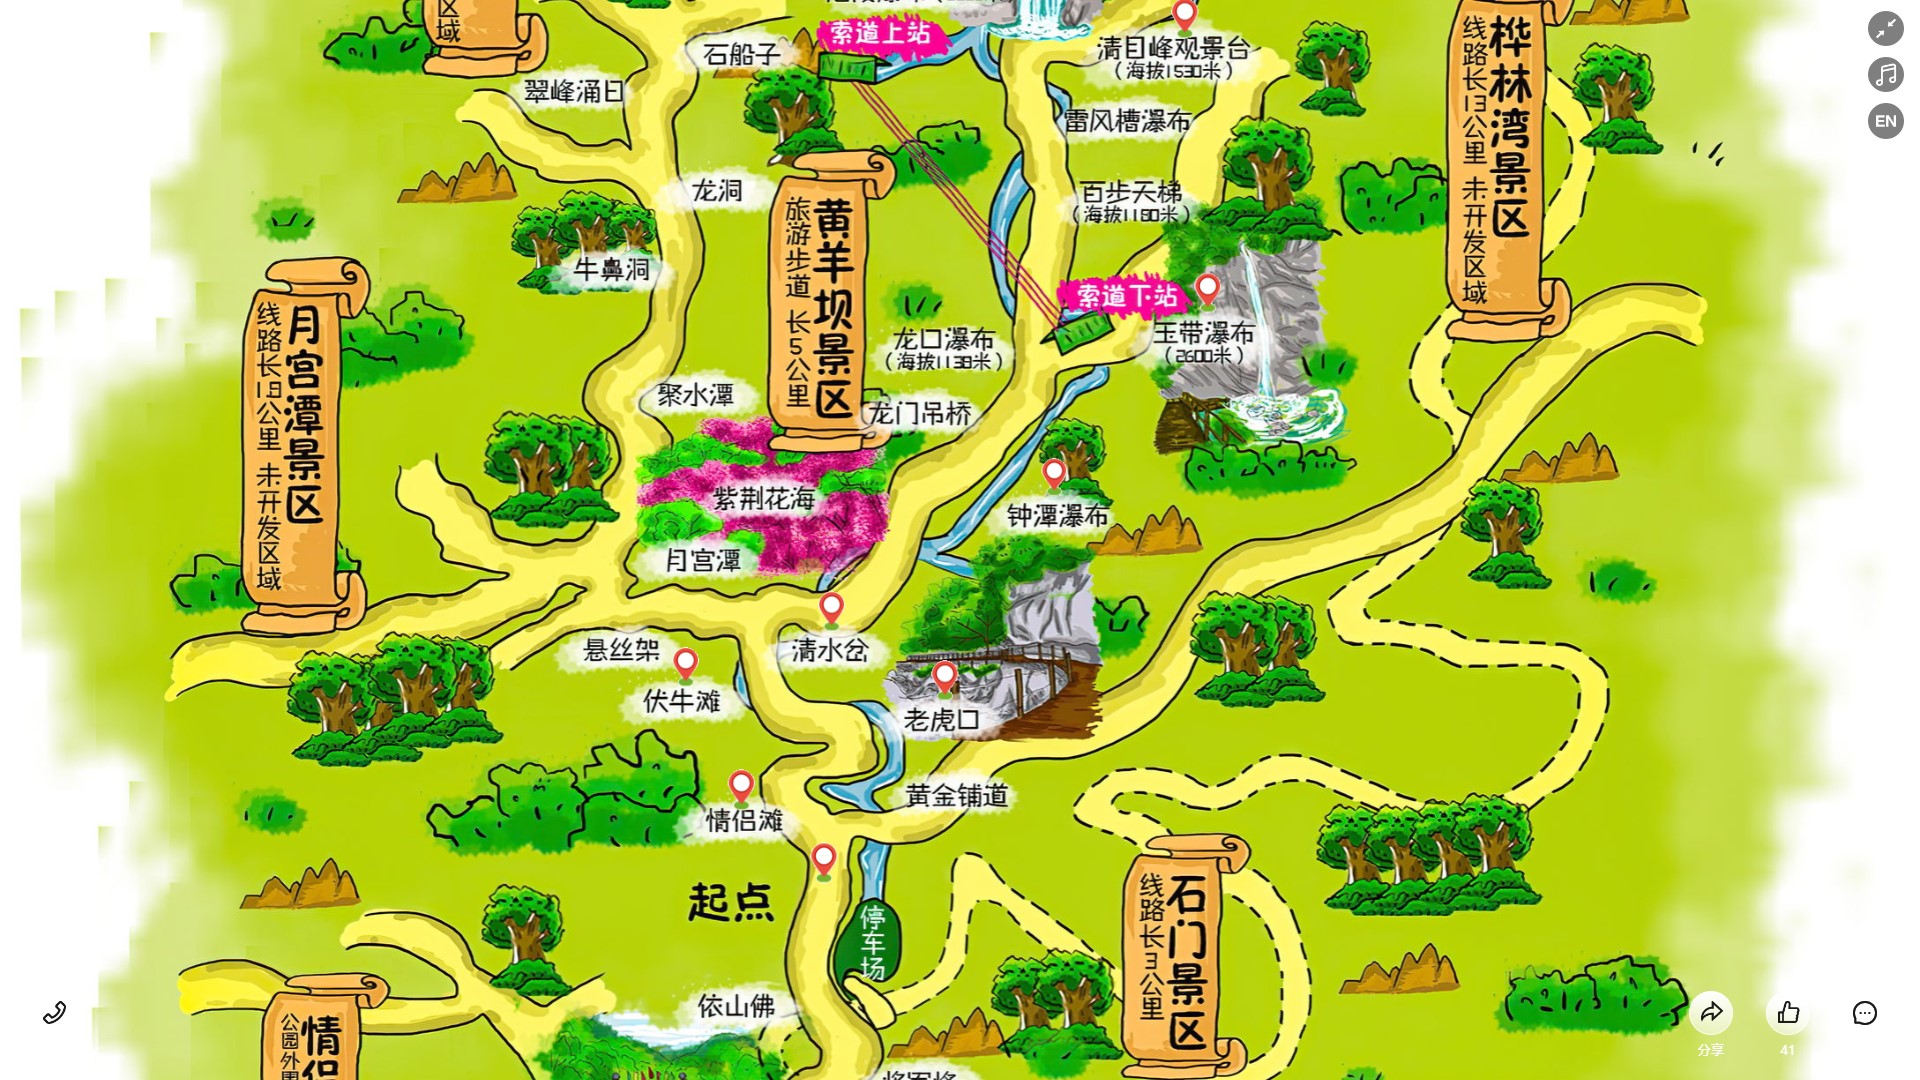 澧县景区导览系统